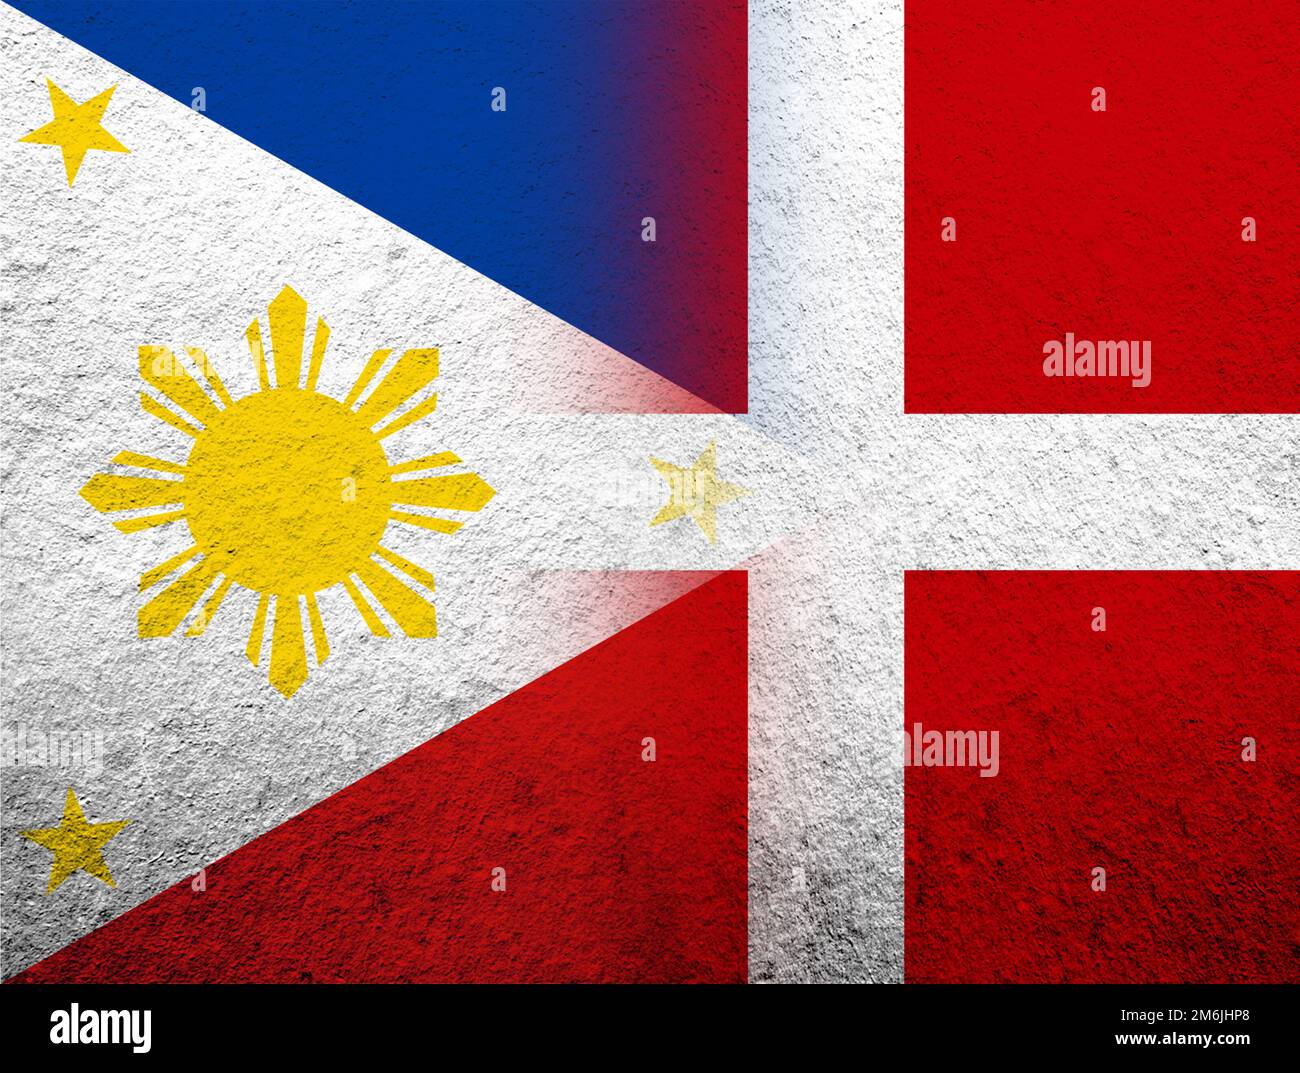 Le Royaume de Danemark drapeau national avec la République des Philippines drapeau national. Grunge l'arrière-plan Banque D'Images